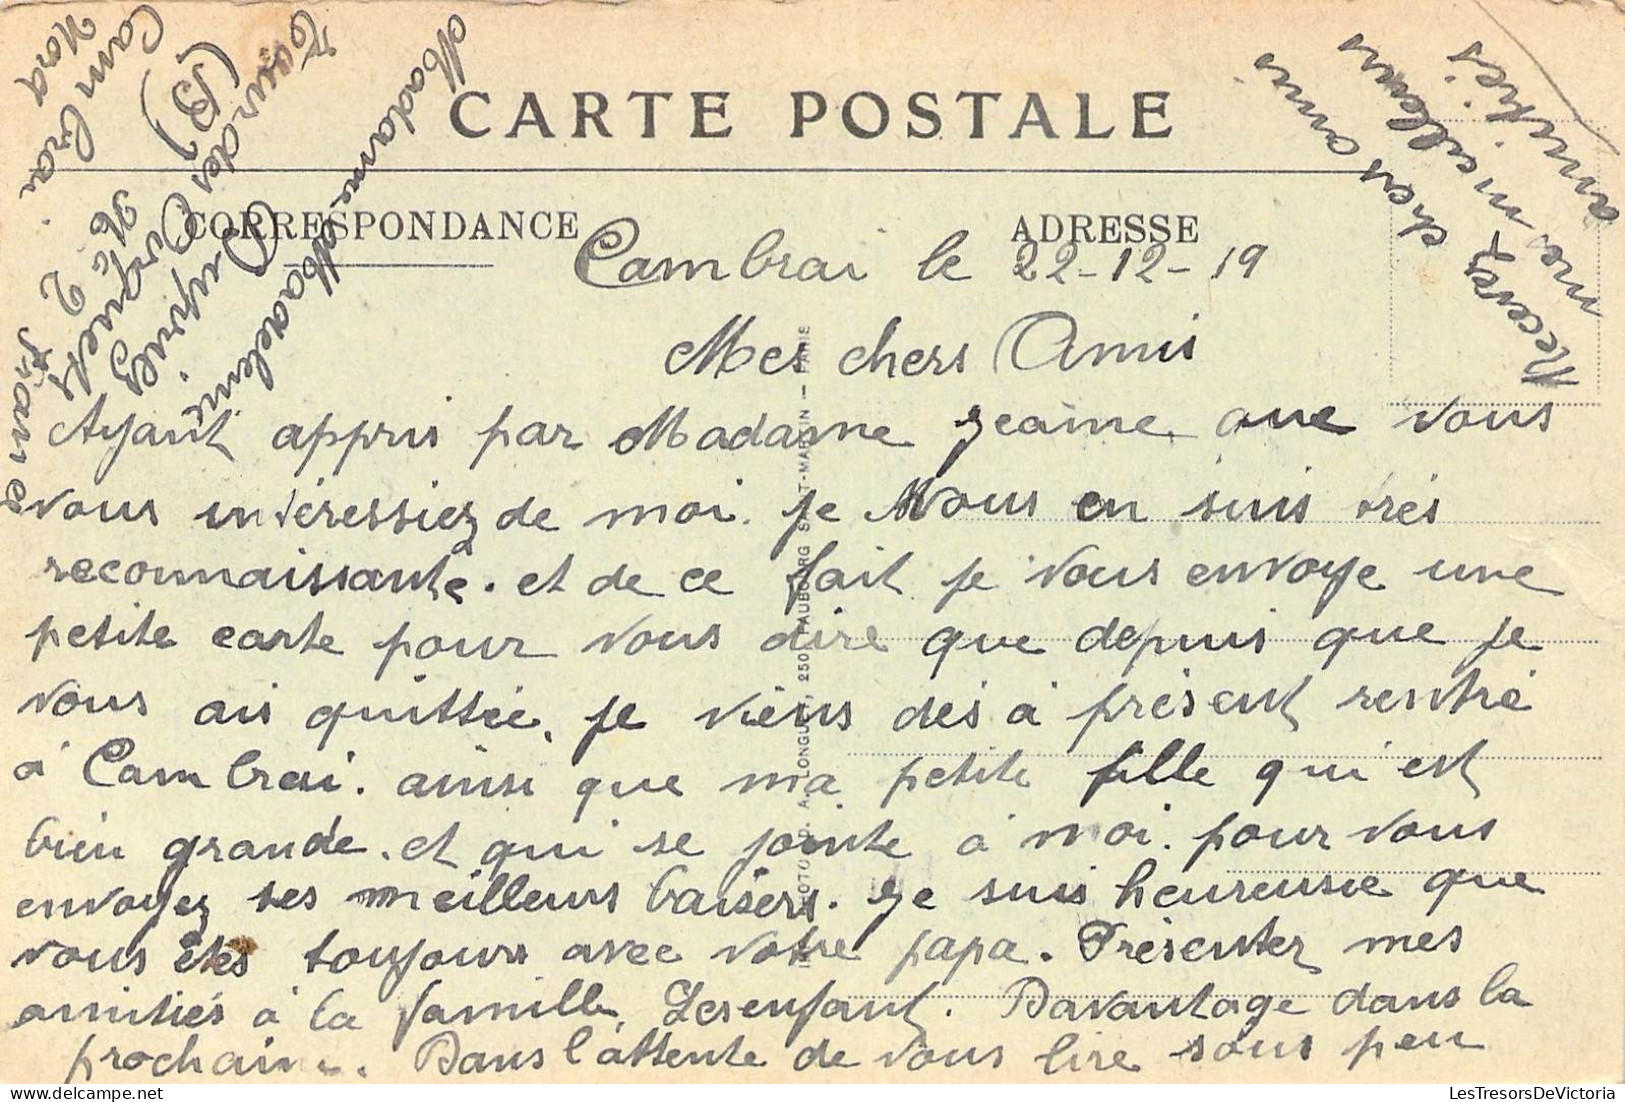 FRANCE - 59 - CAMBRAI - Incendie De L'hôtel De Ville - Octobre 1918 - Carte Postale Ancienne - Cambrai